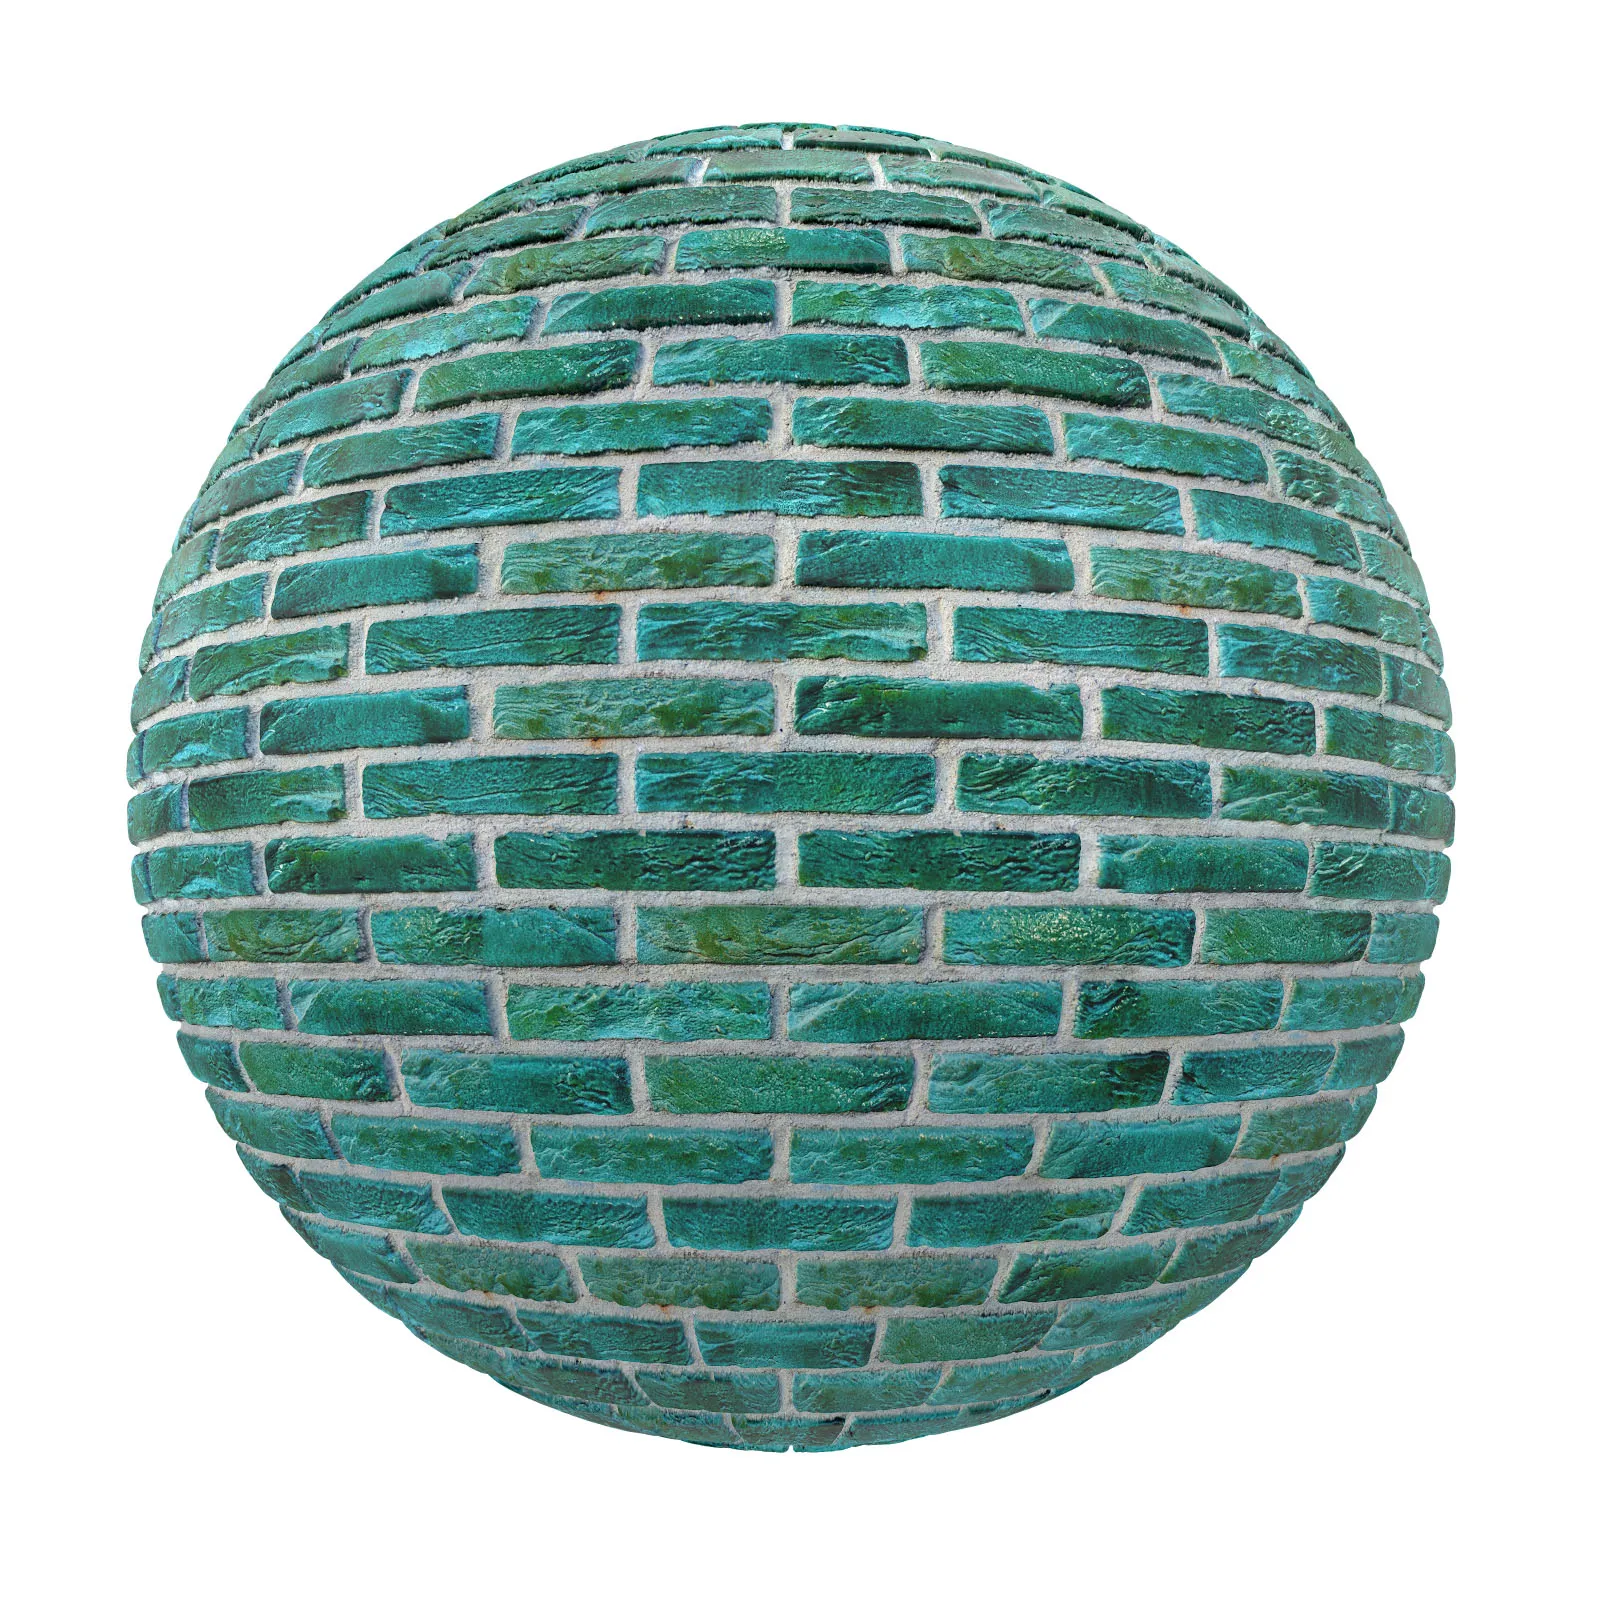 PBR CGAXIS TEXTURES – BRICK – Green Brick Wall